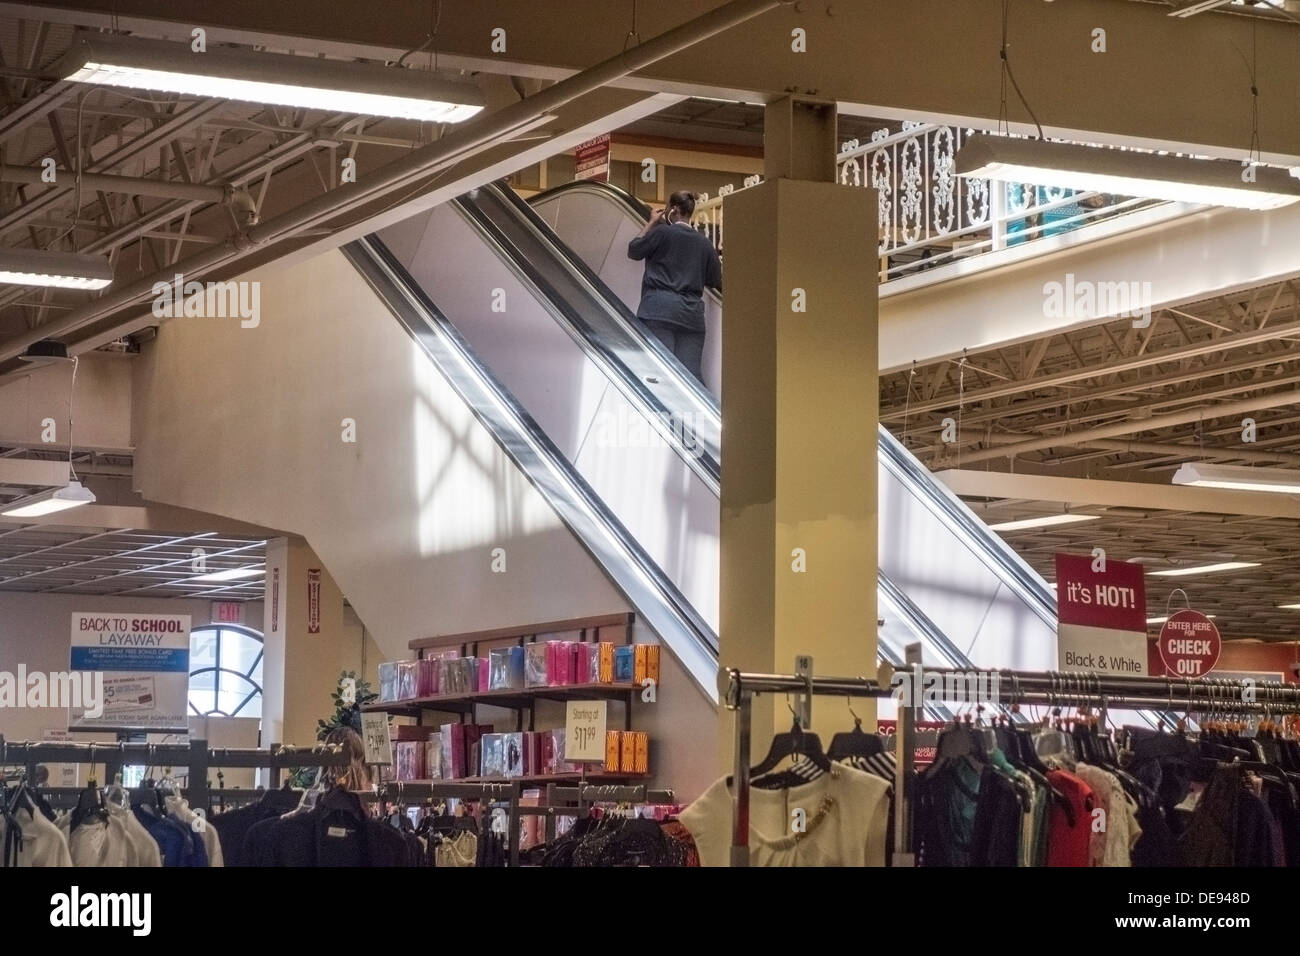 All'interno di un dipartimento di sconto negozio con cremagliere di vestiti e di una donna in sella alla scala mobile. Oklahoma City, Oklahoma, Stati Uniti d'America. Foto Stock